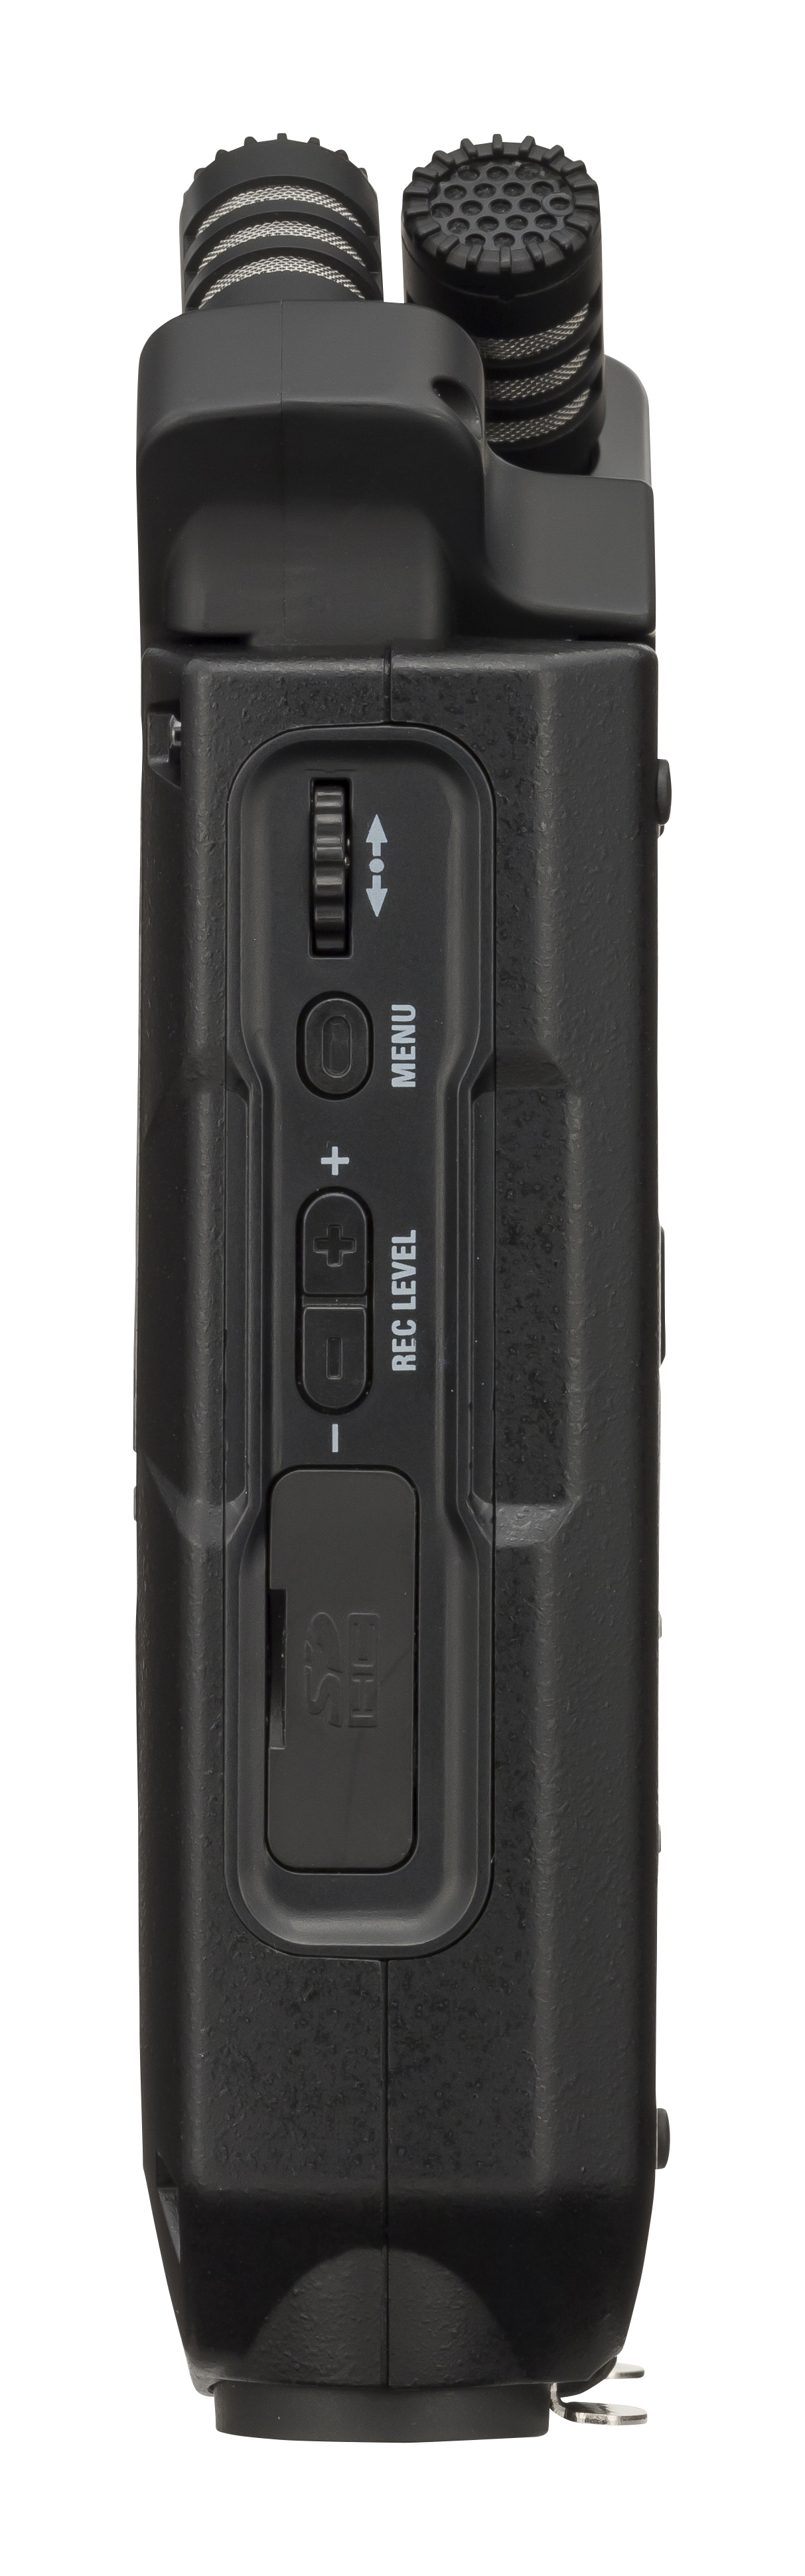 Zoom H4n Pro Black - Mobile Recorder - Variation 2